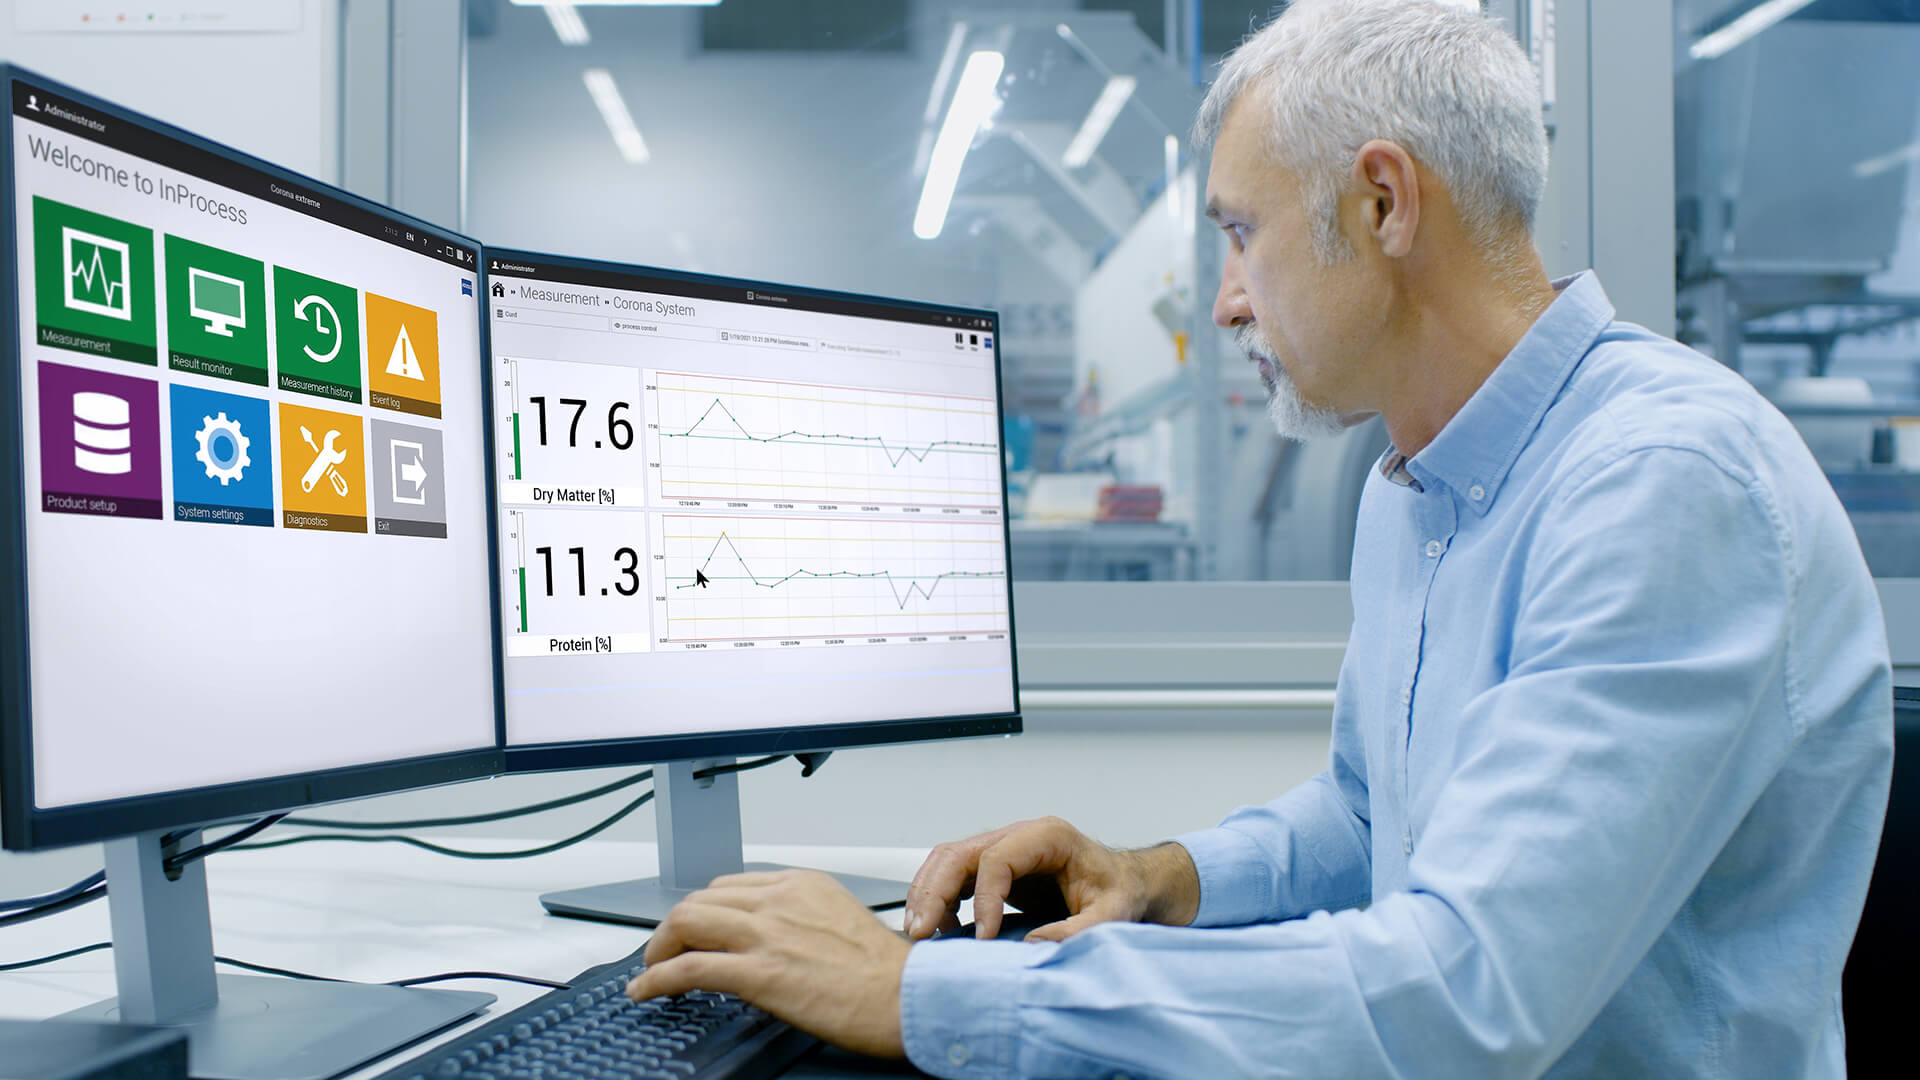 工程师坐在办公室的电脑前，屏幕上显示的是inprocess软件的界面 